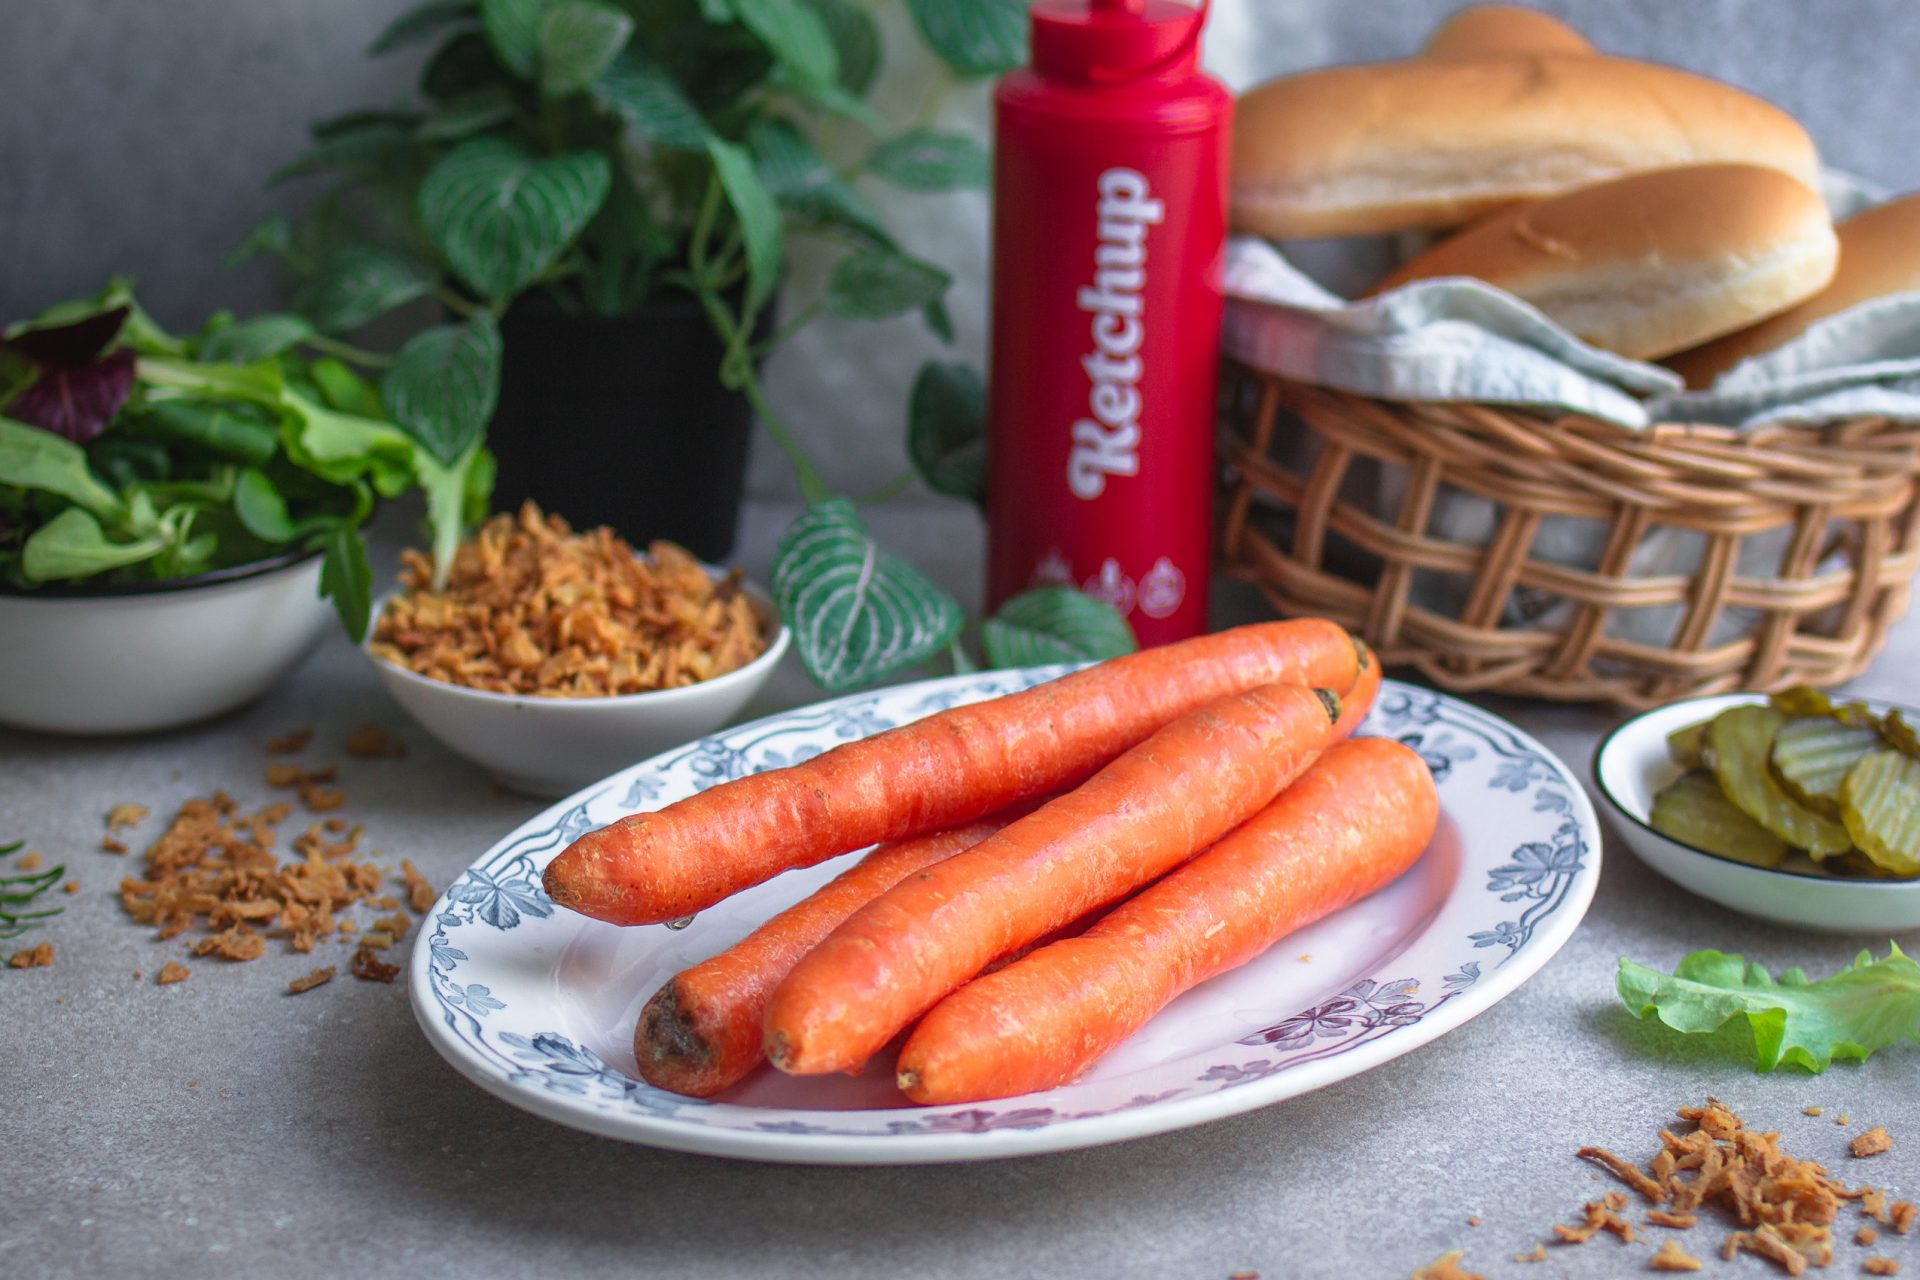 Carrot Dog - veganer Hot Dog